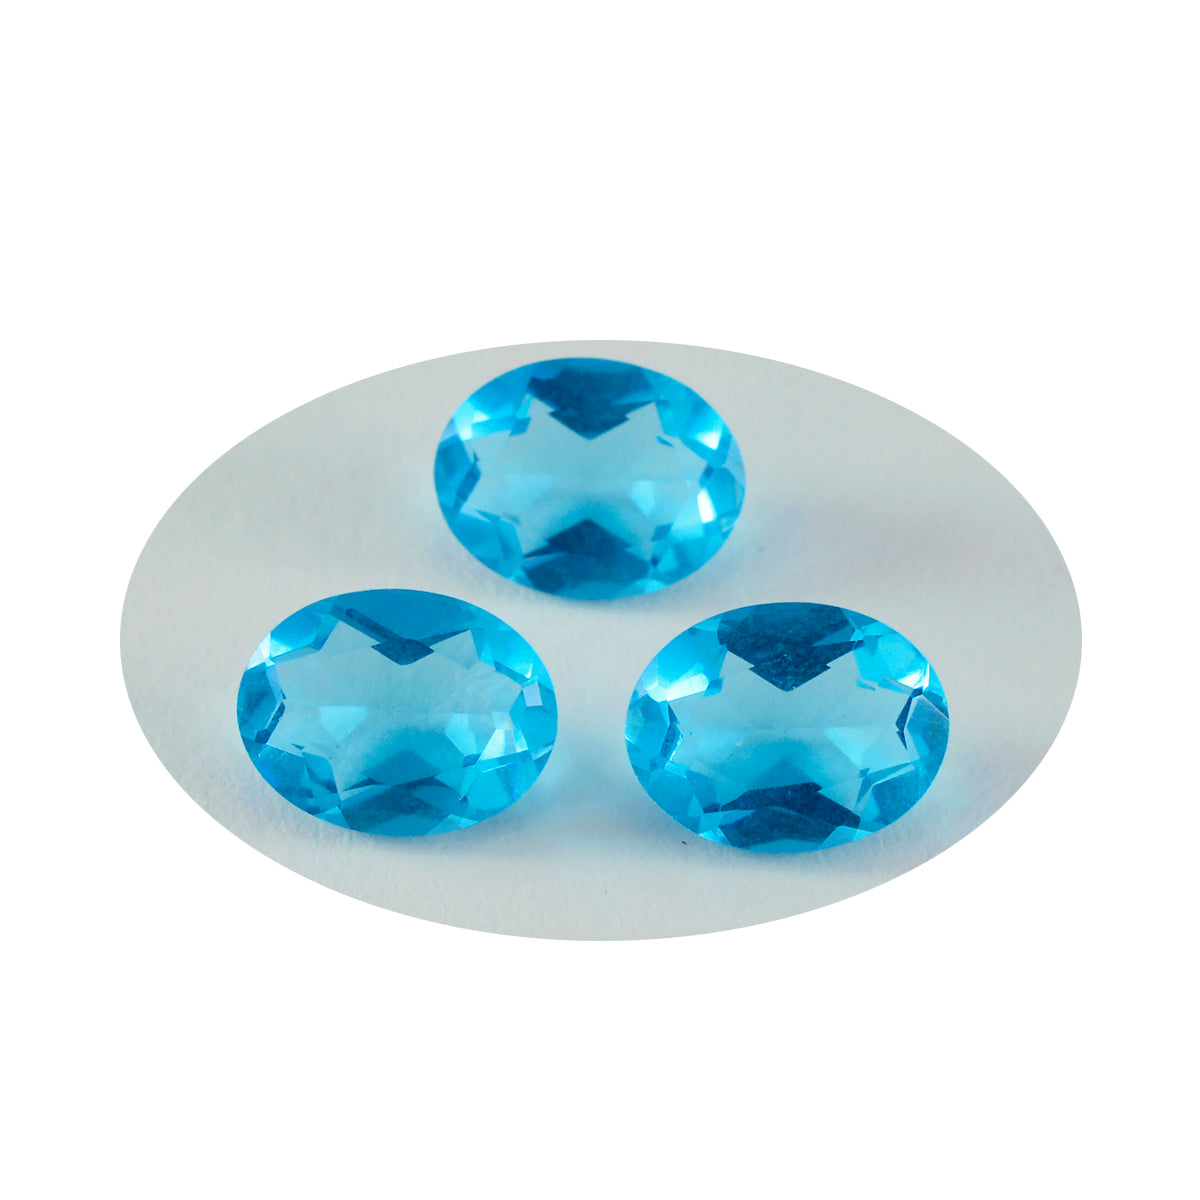 Riyogems 1 pièce topaze bleue cz à facettes 10x12mm forme ovale belle qualité pierre en vrac